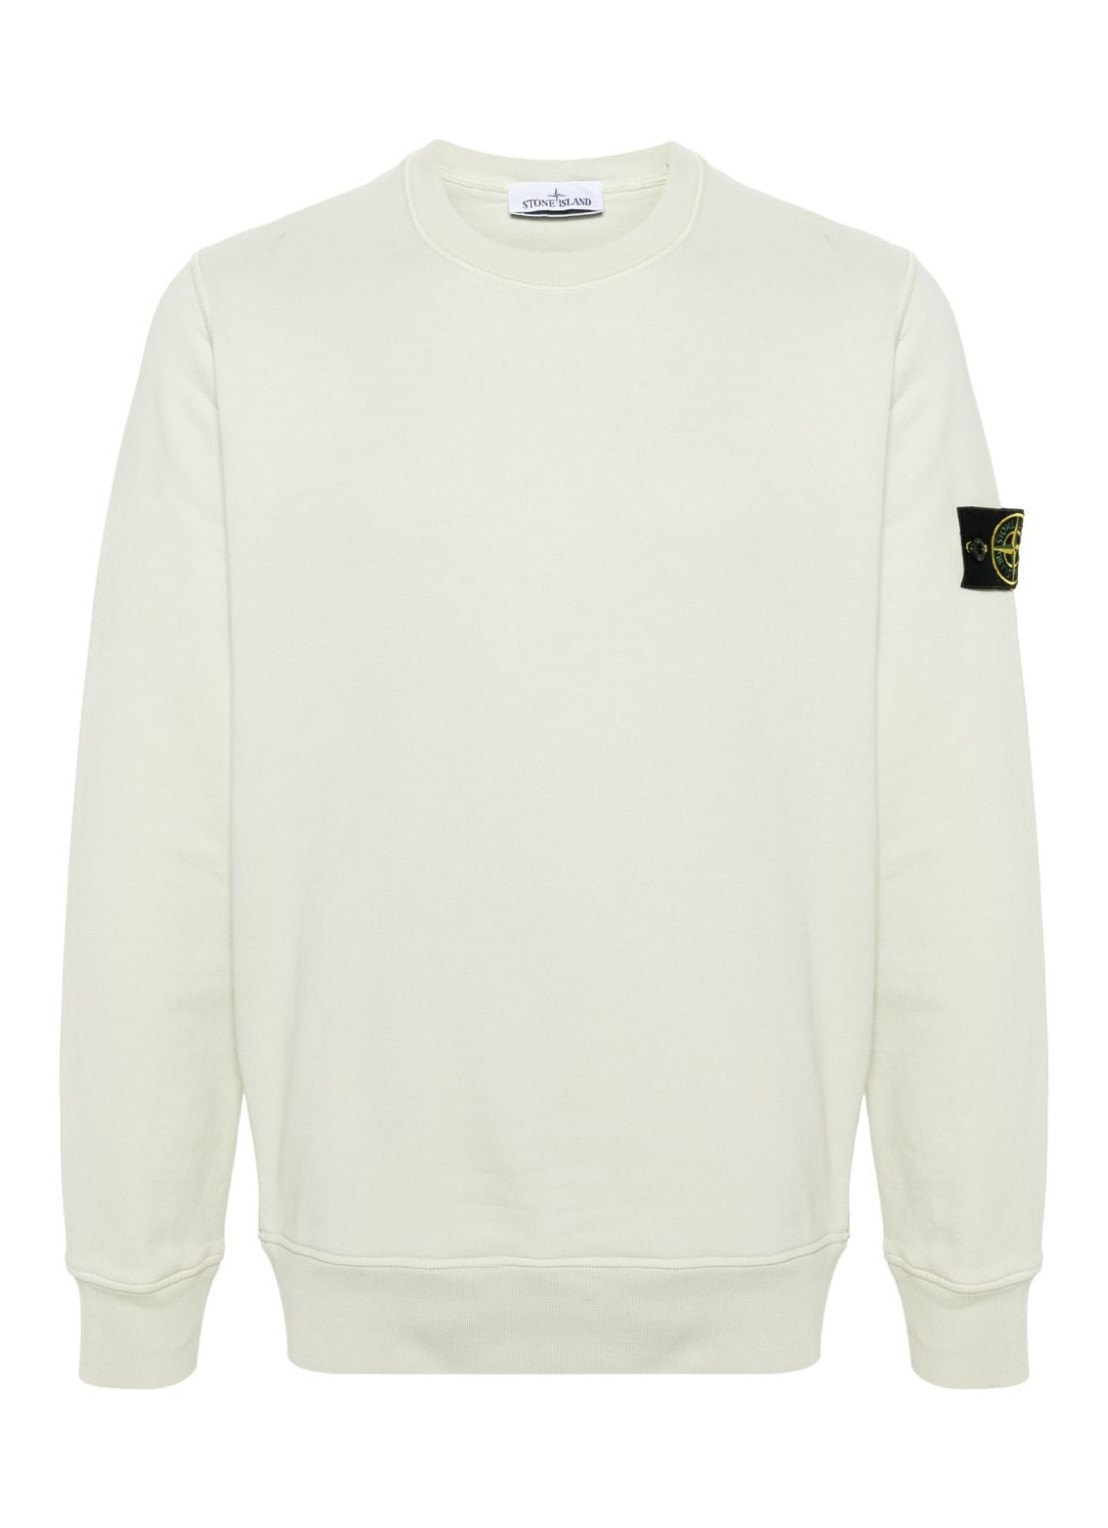 Sudadera stone island sweater man sweat-shirt 801563051 v0051 talla M
 